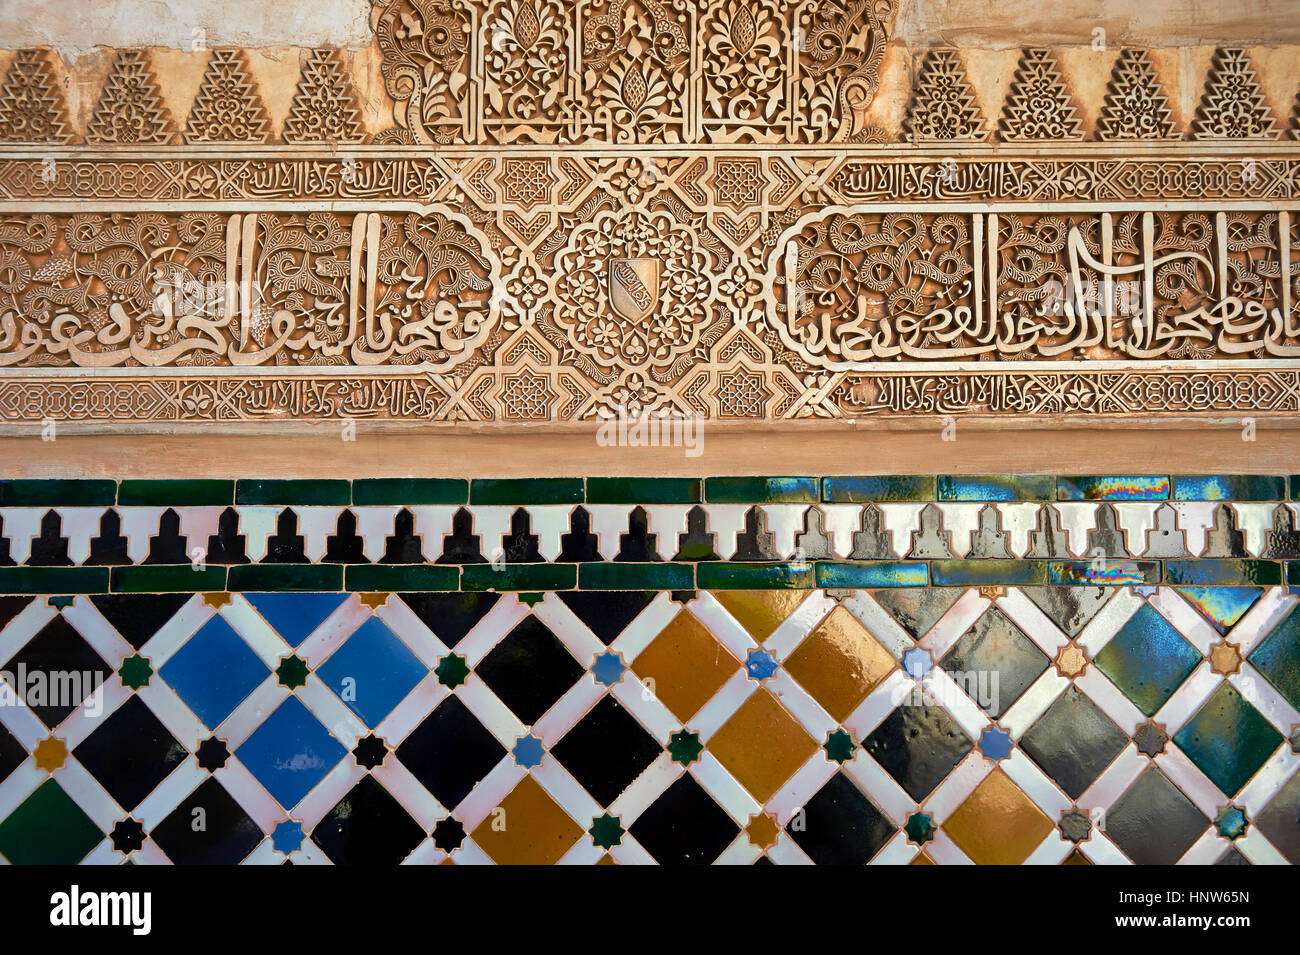 Les carreaux de céramique arabesque mauresque plâtres sculptés de l'Palacios Nazaries, à l'Alhambra. Grenade, Andalousie, espagne. Banque D'Images